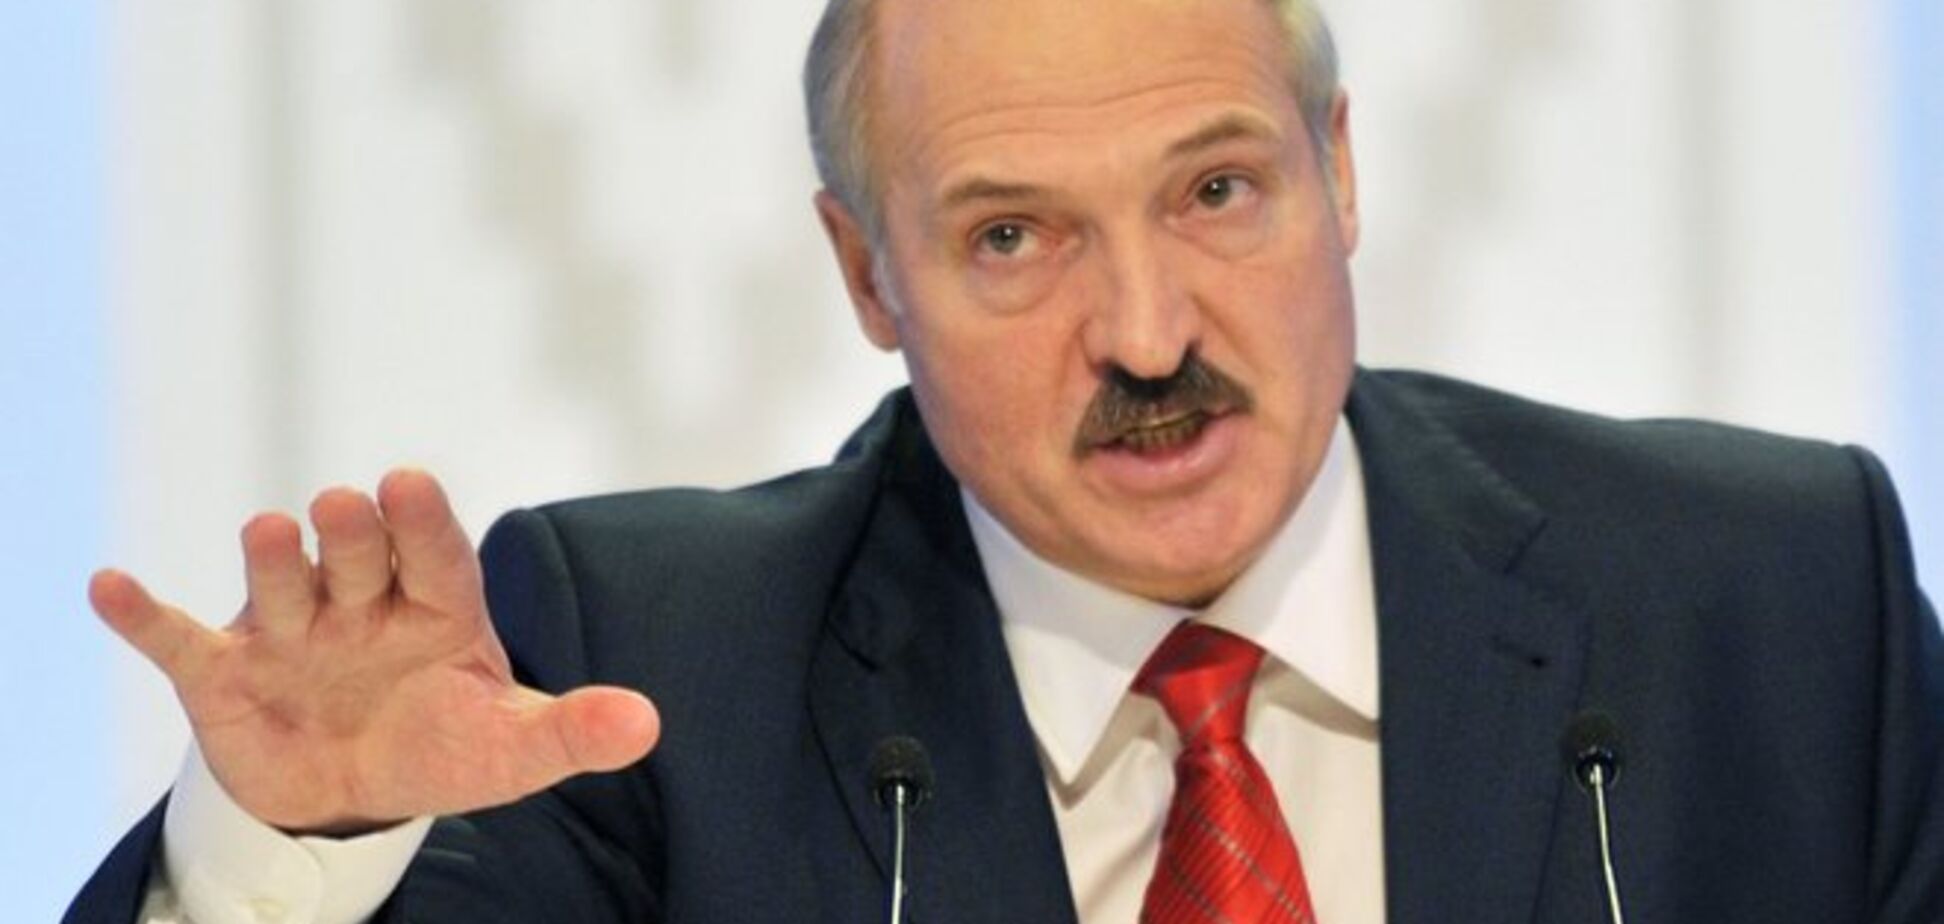 Лукашенко закликав Україну не поспішати з виходом з СНД, щоб потім 'не кусати лікті'